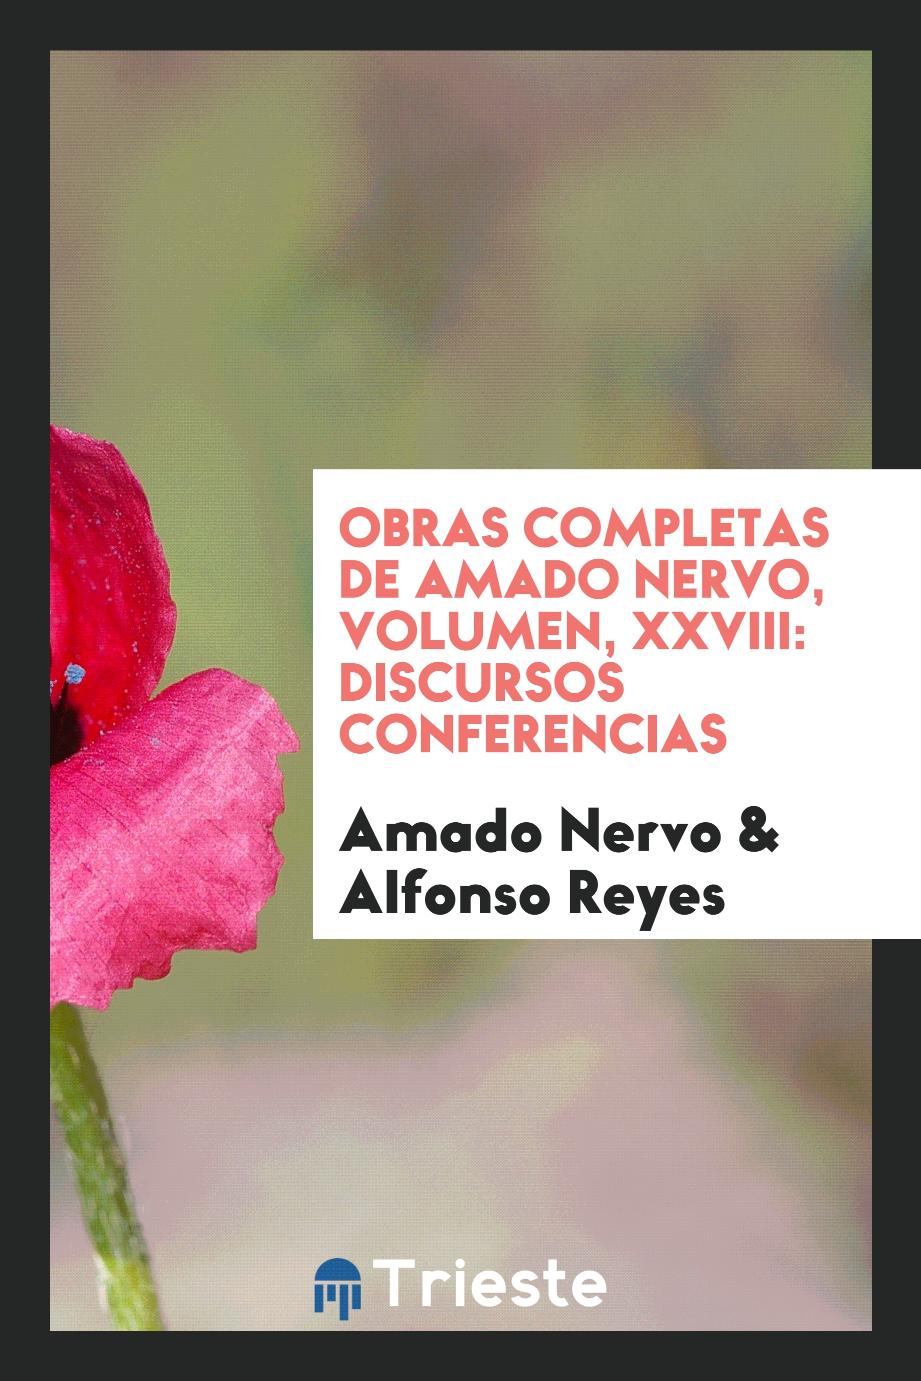 Obras Completas de Amado Nervo, Volumen, XXVIII: Discursos Conferencias